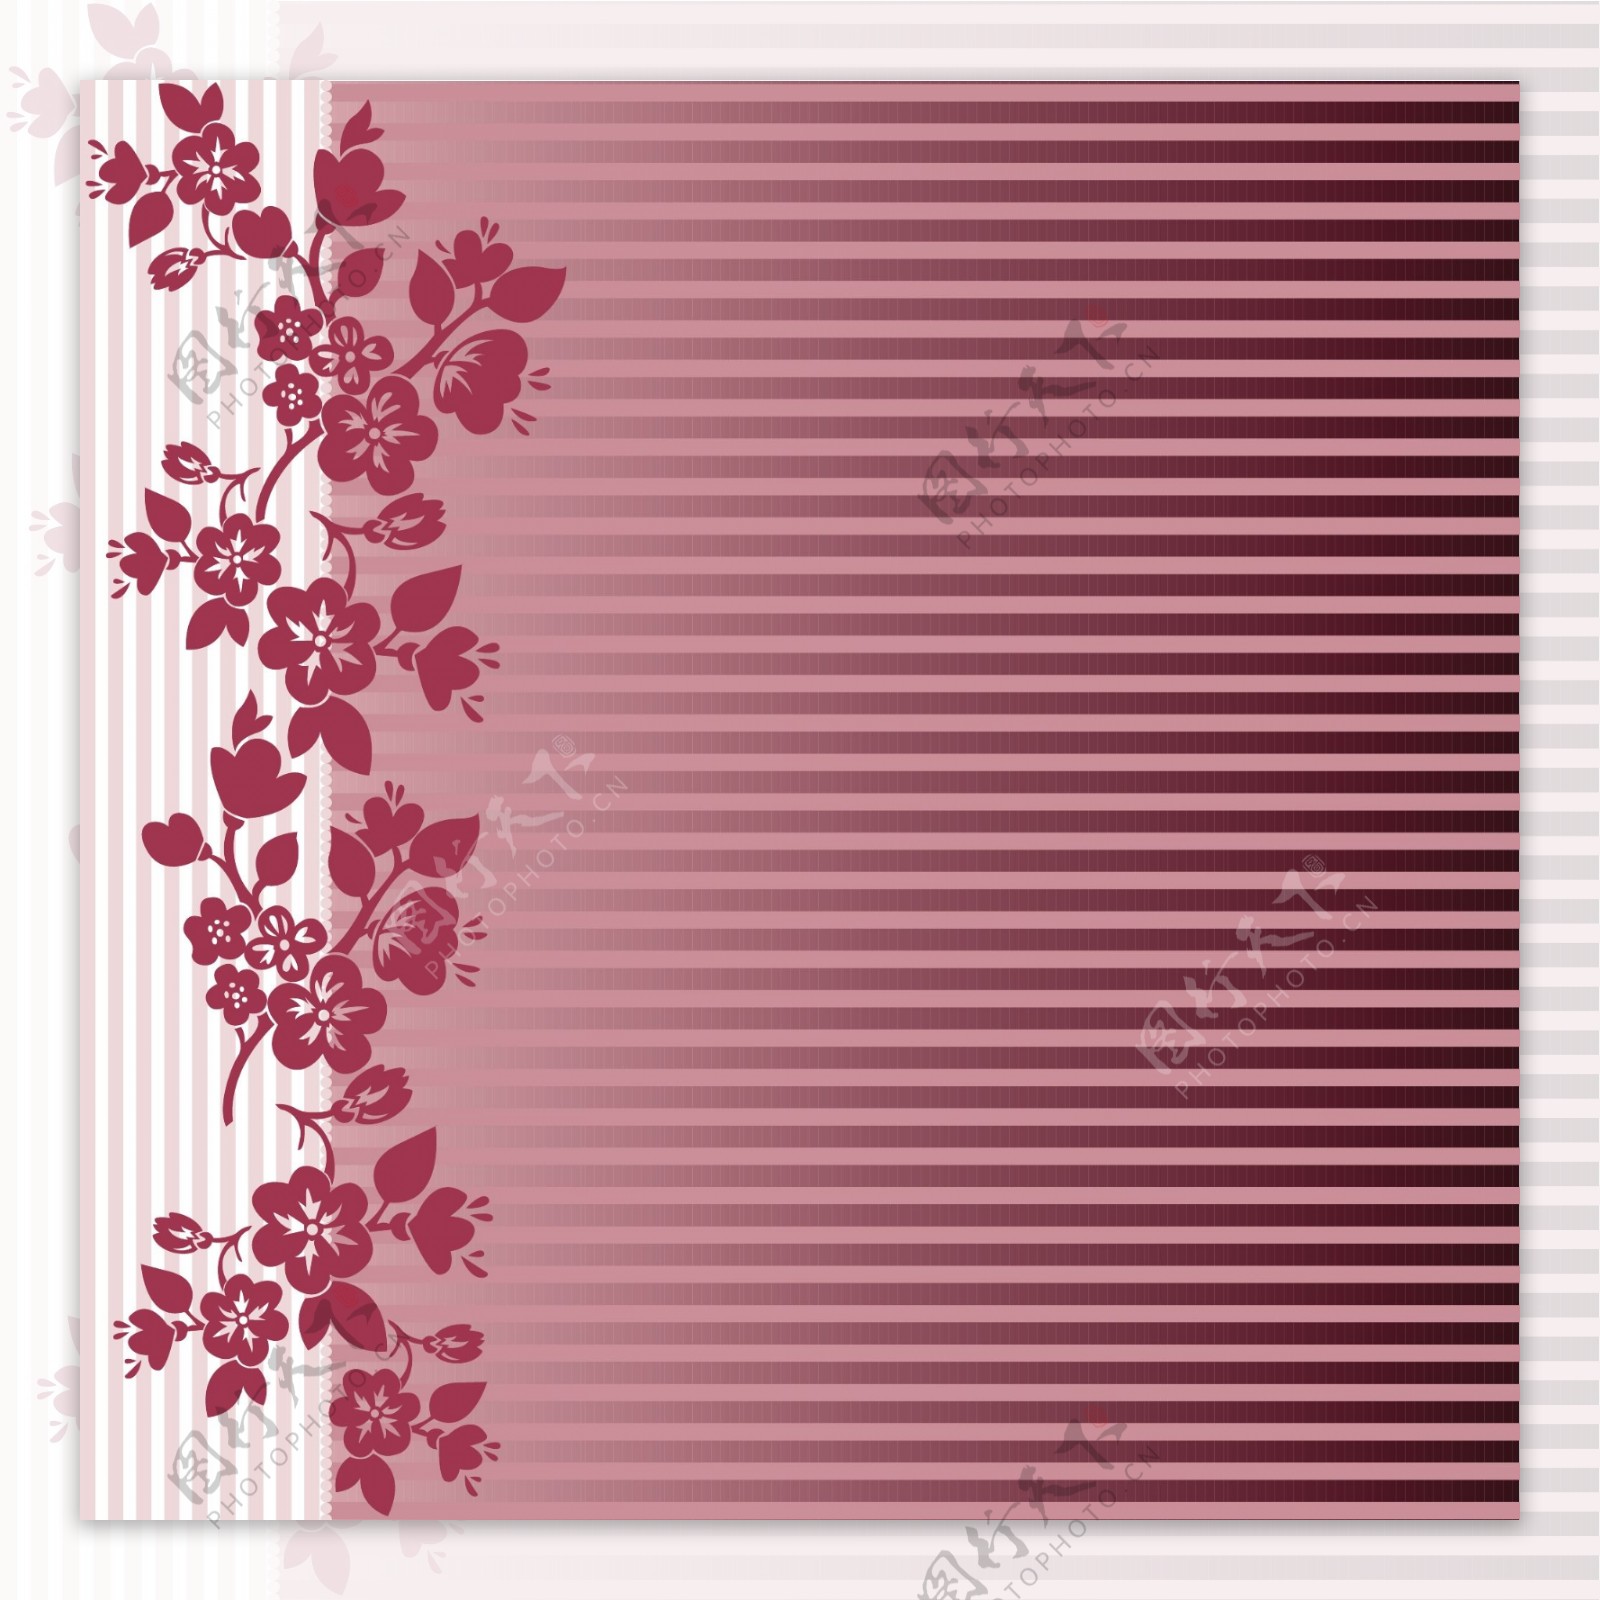 浪漫红色桃花点缀背景背景矢量素材